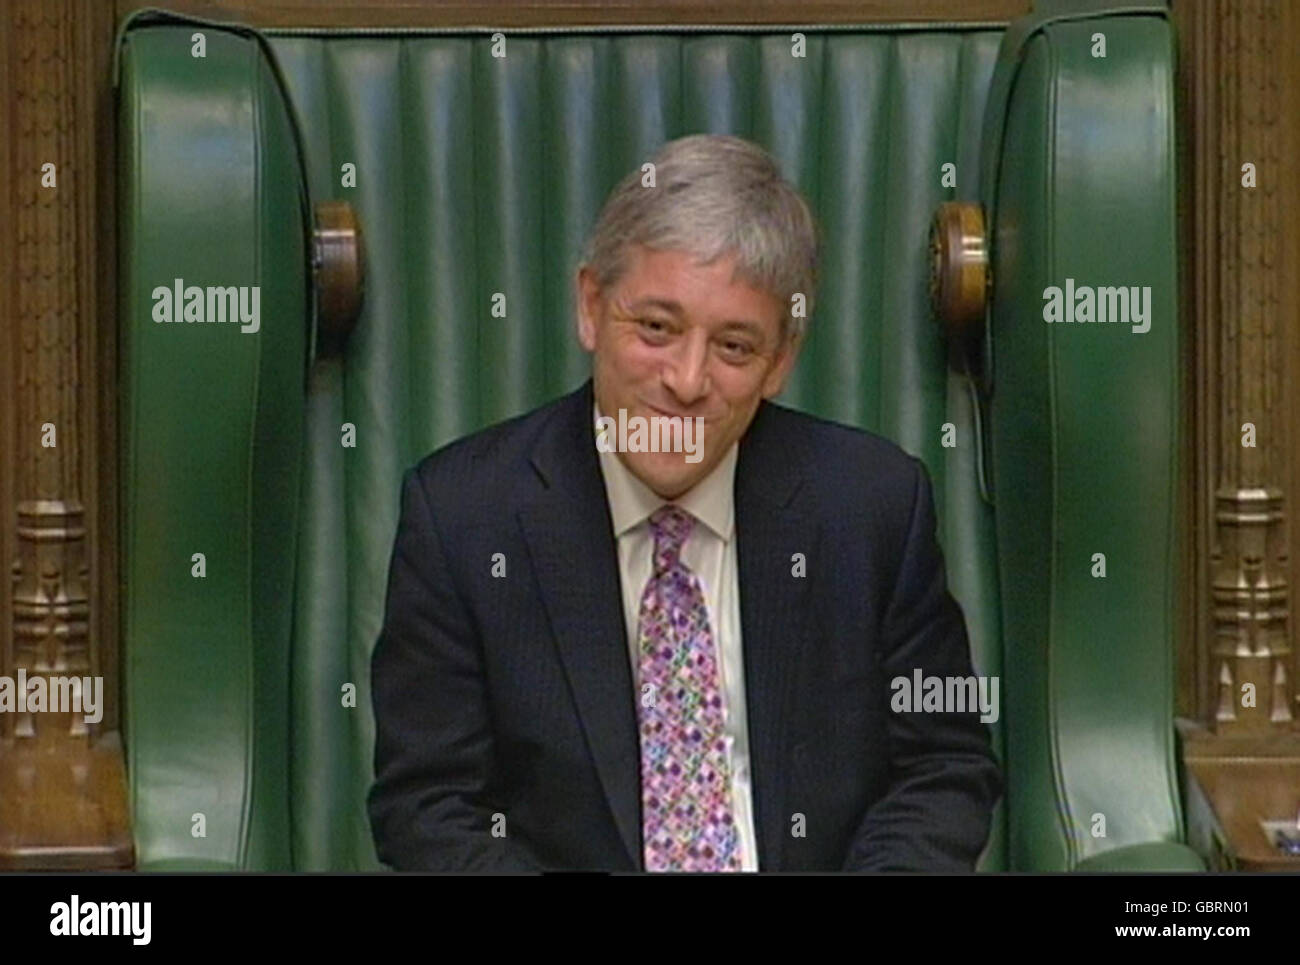 Le député John Bercow écoute le premier ministre Gordon Brown qui rend hommage au nouveau président de la Chambre des communes. Banque D'Images